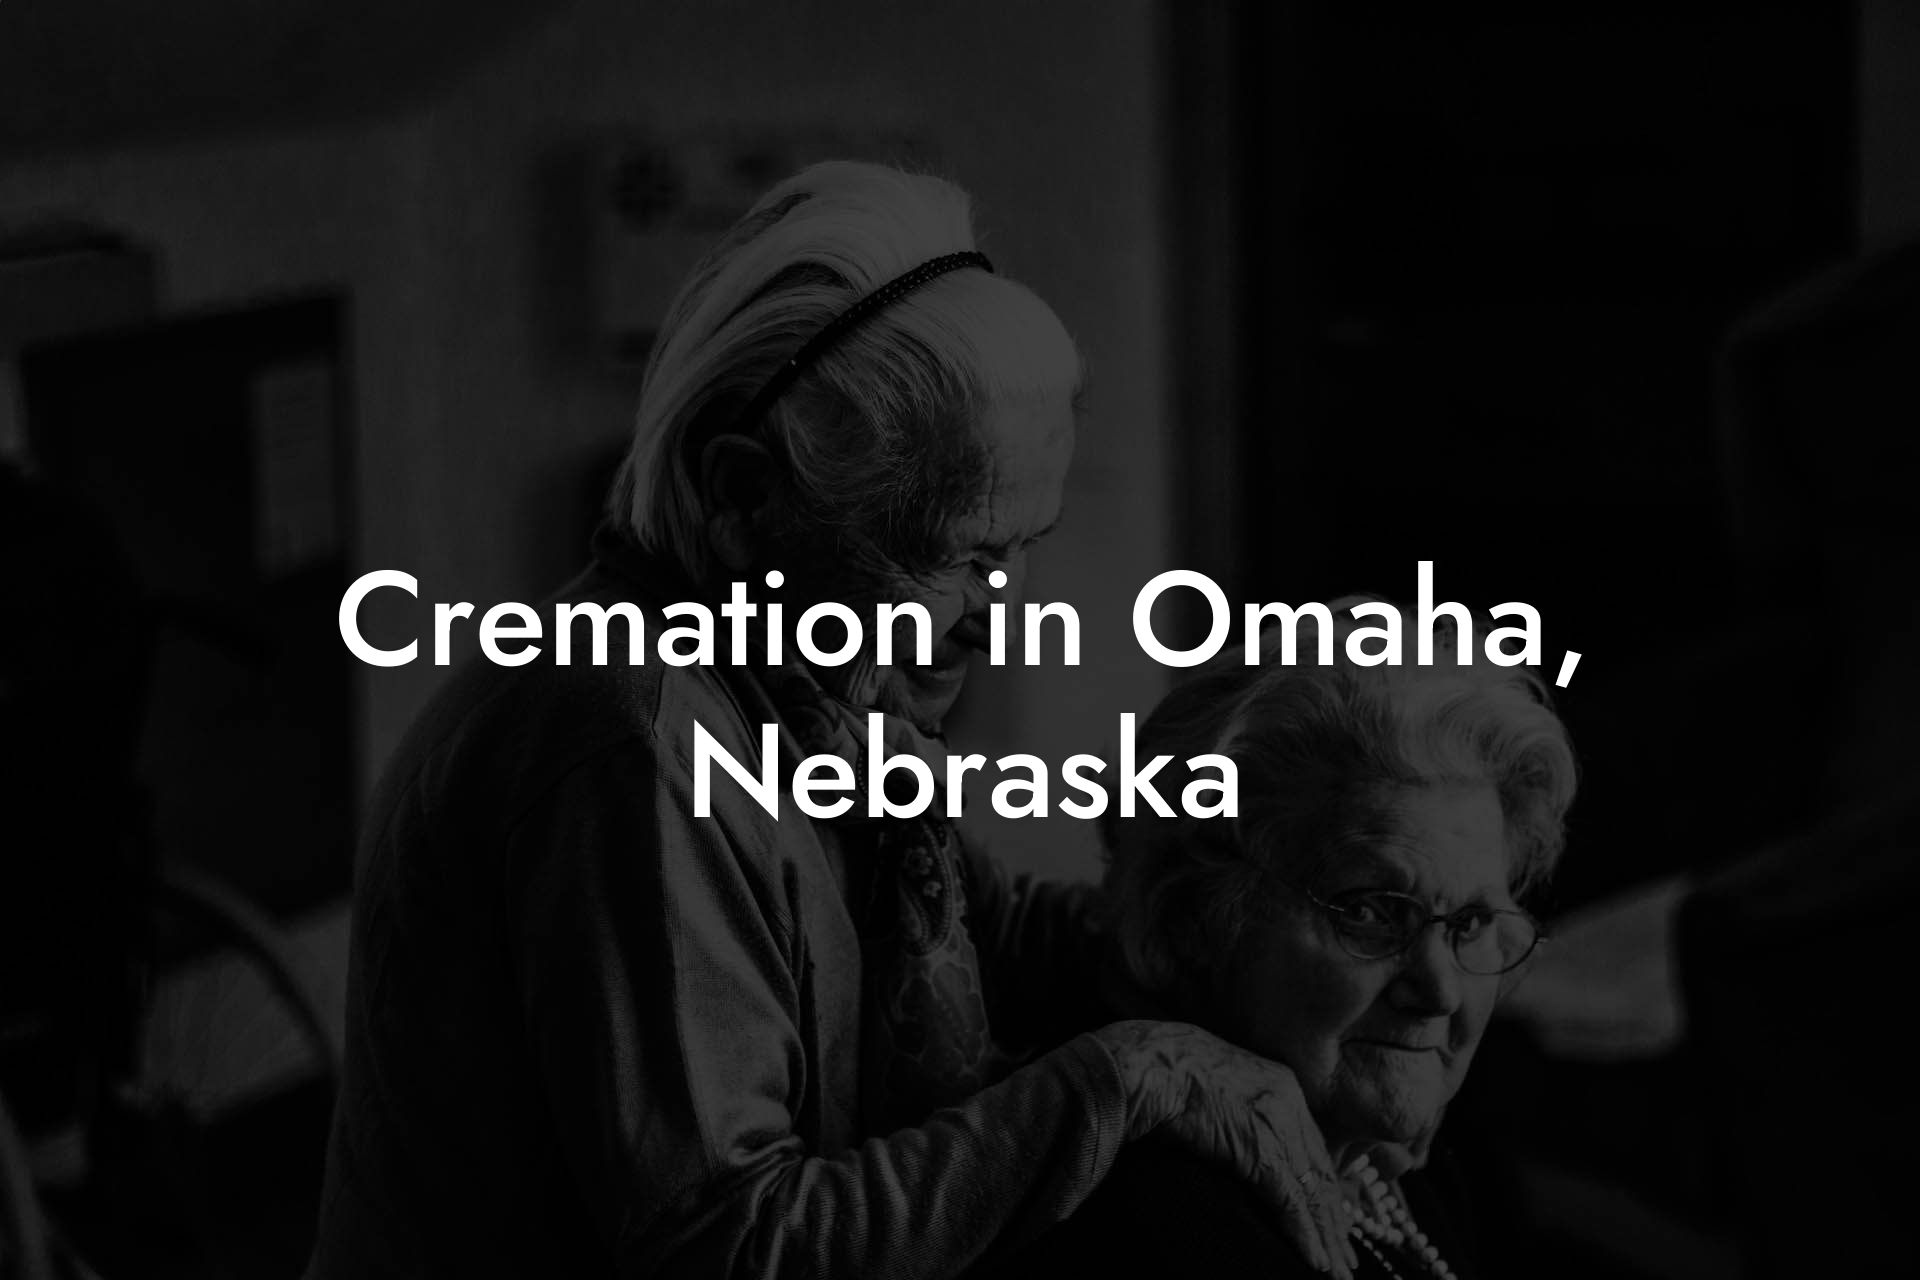 Cremation in Omaha, Nebraska